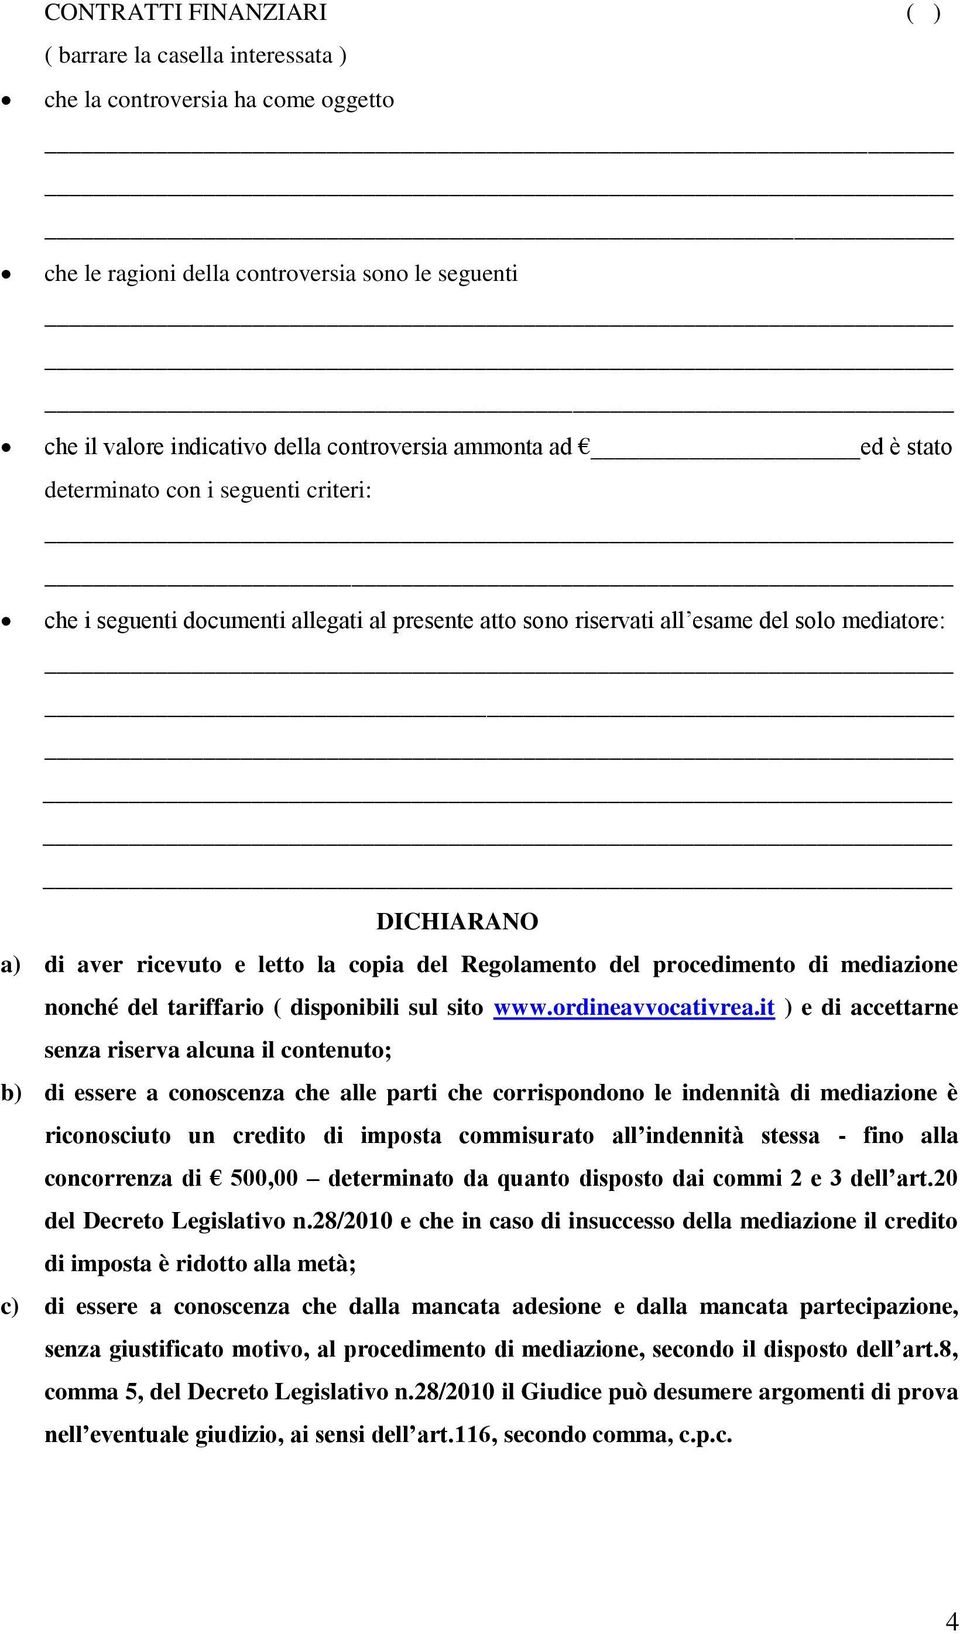 Regolamento del procedimento di mediazione nonché del tariffario ( disponibili sul sito www.ordineavvocativrea.